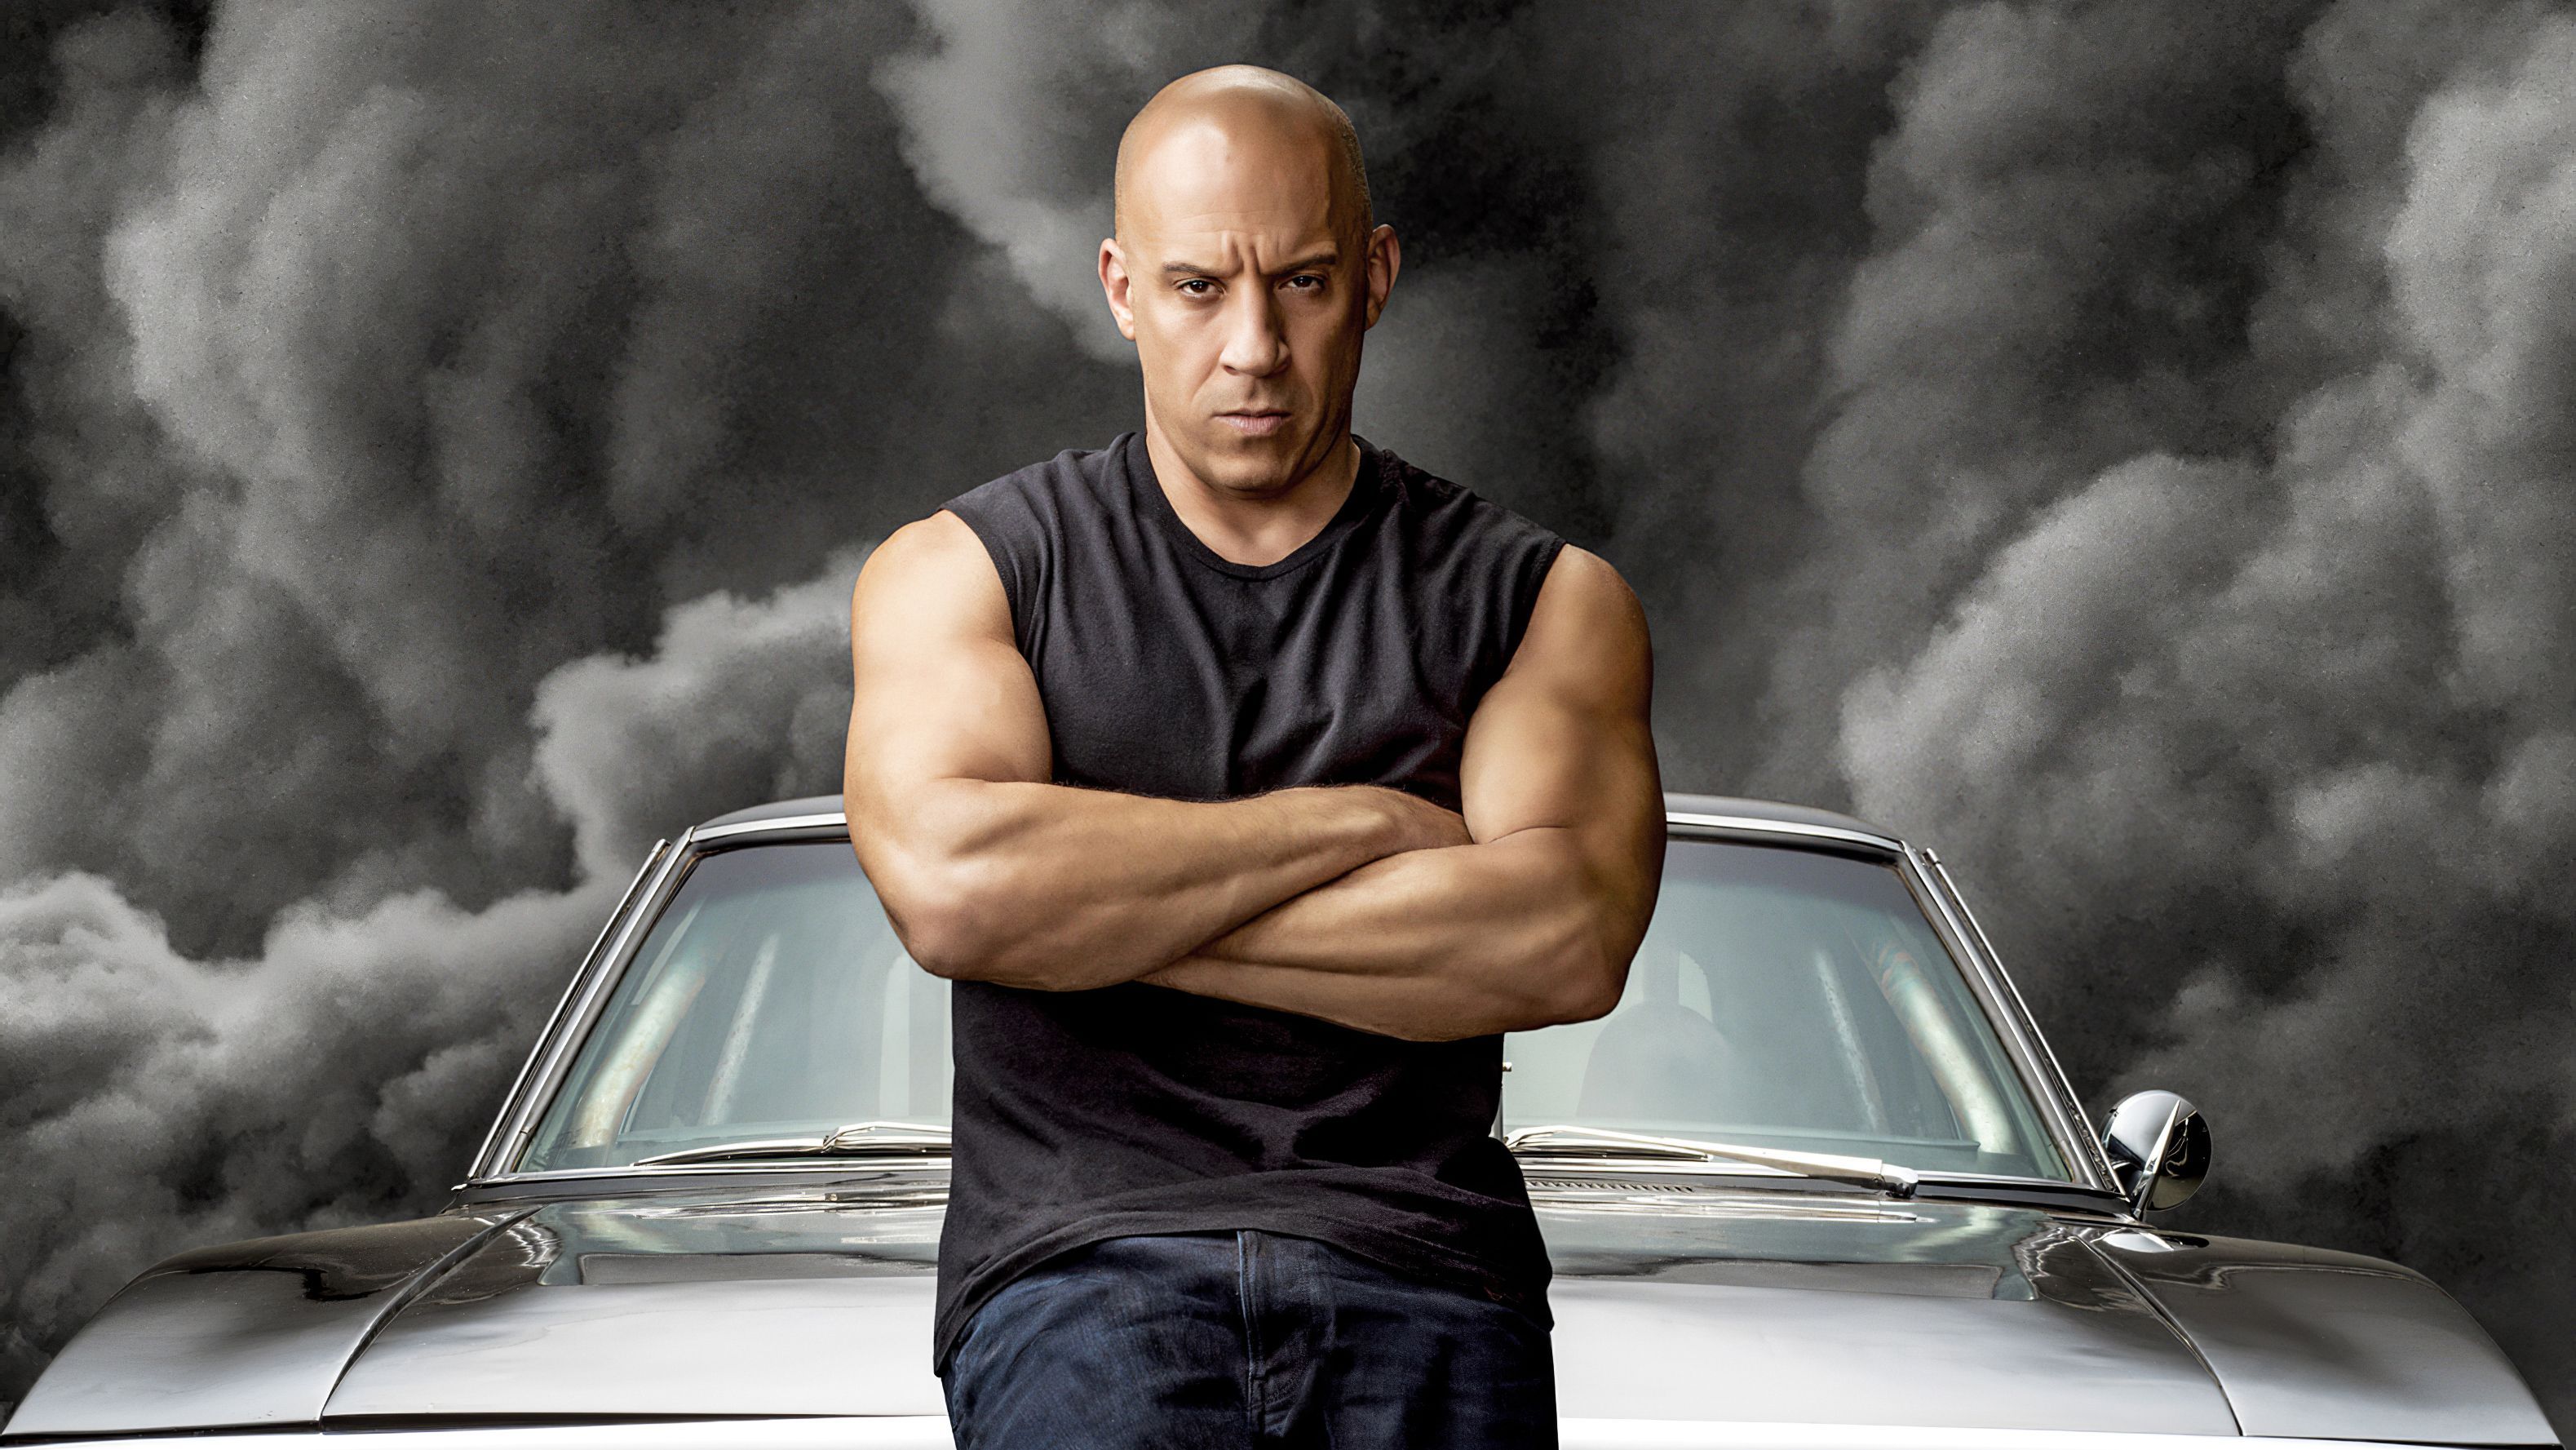 Dominic Toretto Wallpaper Free Dominic Toretto Background